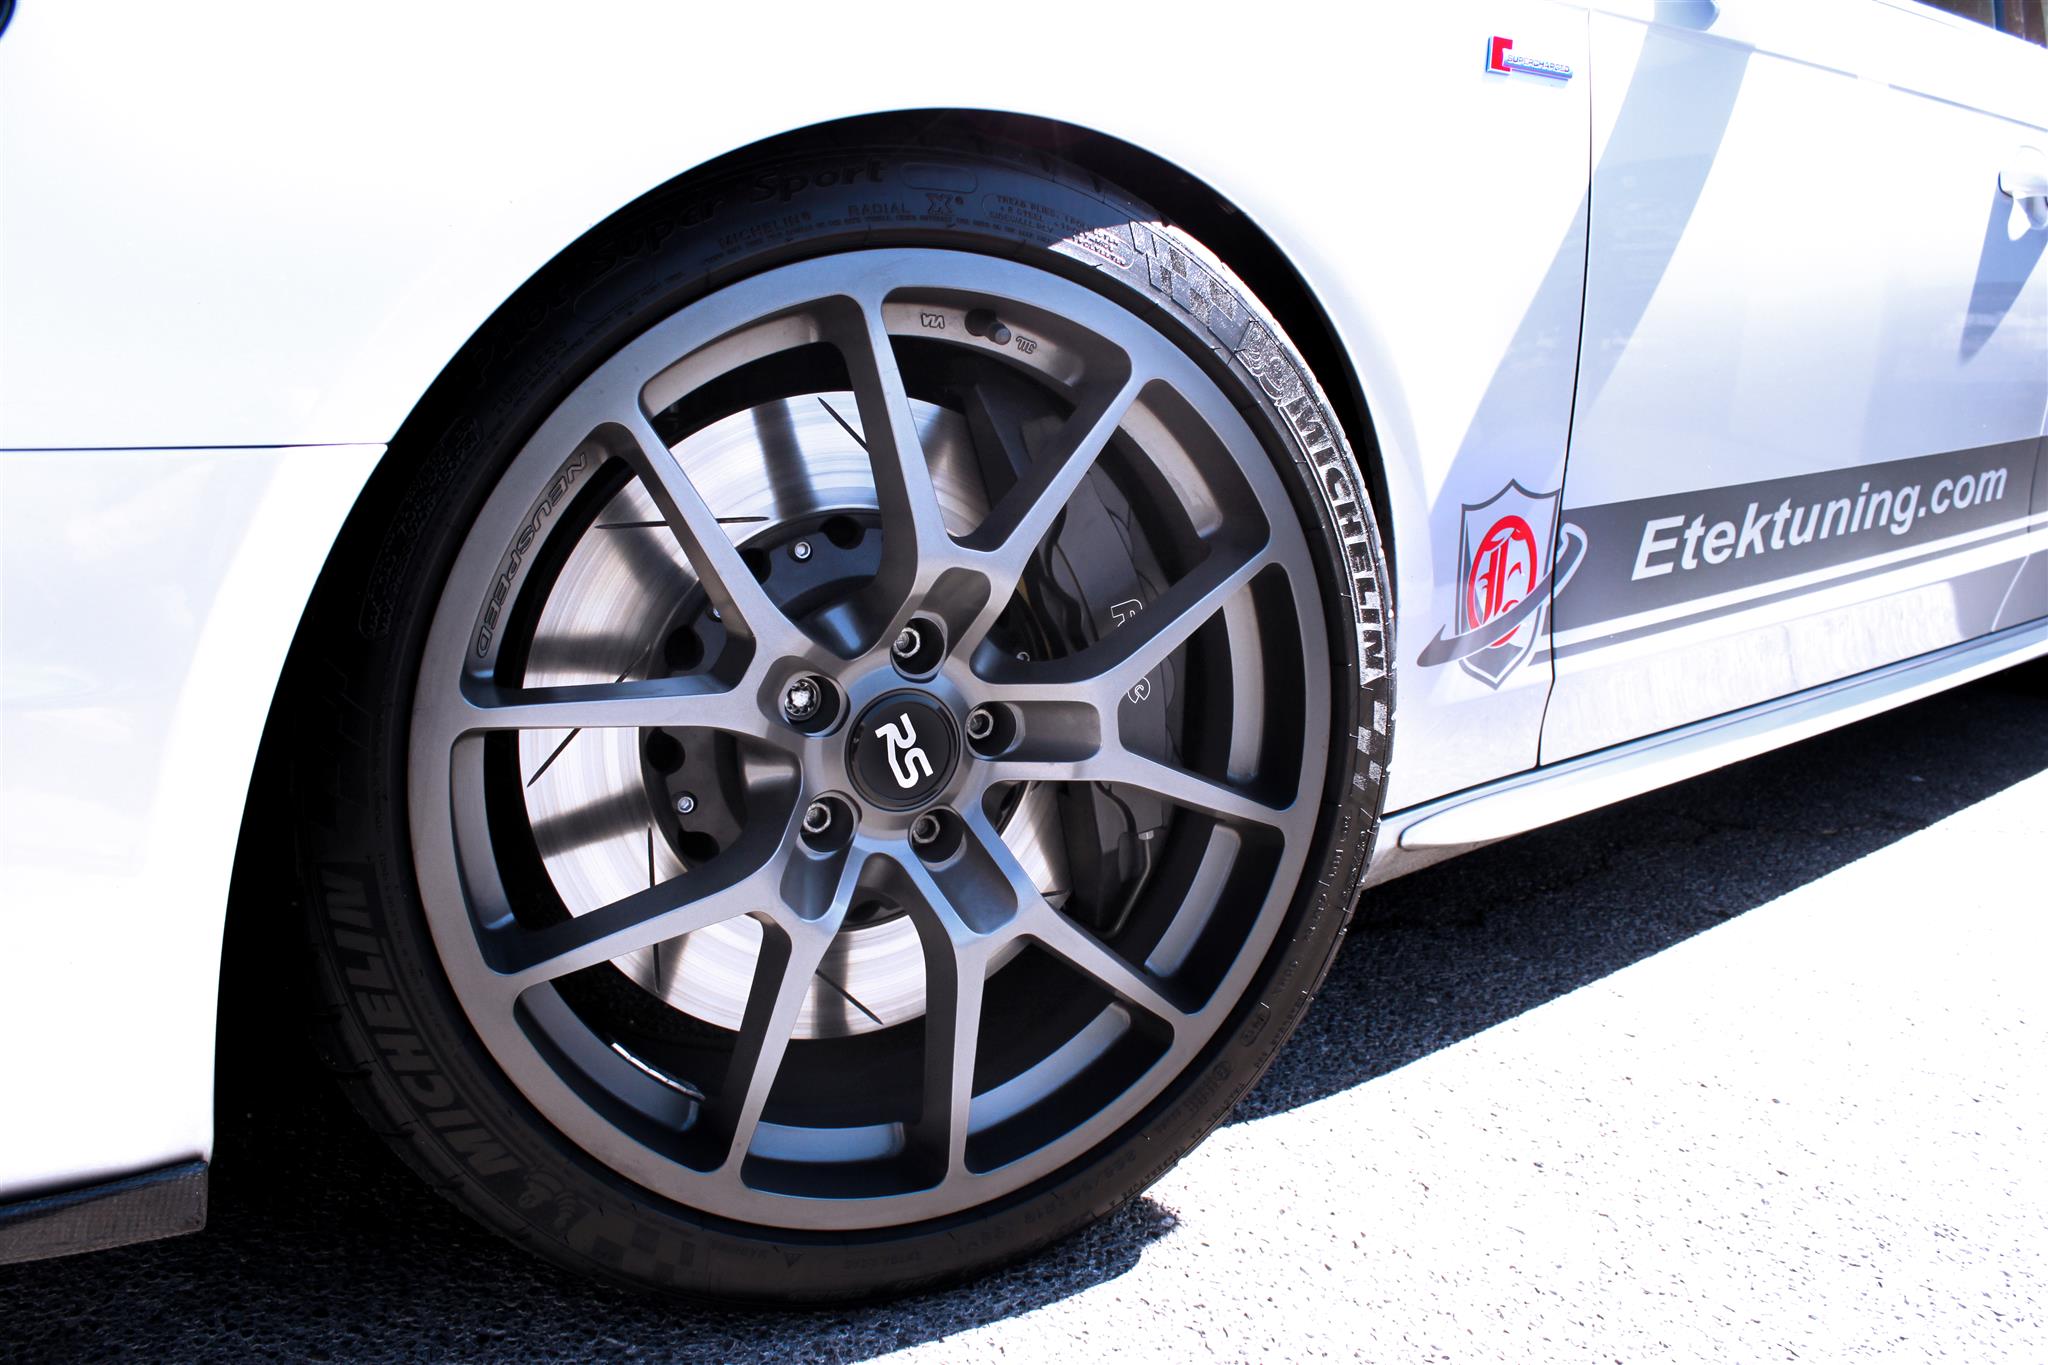 Eurotek Tuning's 2011 Audi S4 Build -  Neuspeed 19x9 RSe10 Wheels, Forge 8 Piston 380mm Big Brake Kit: